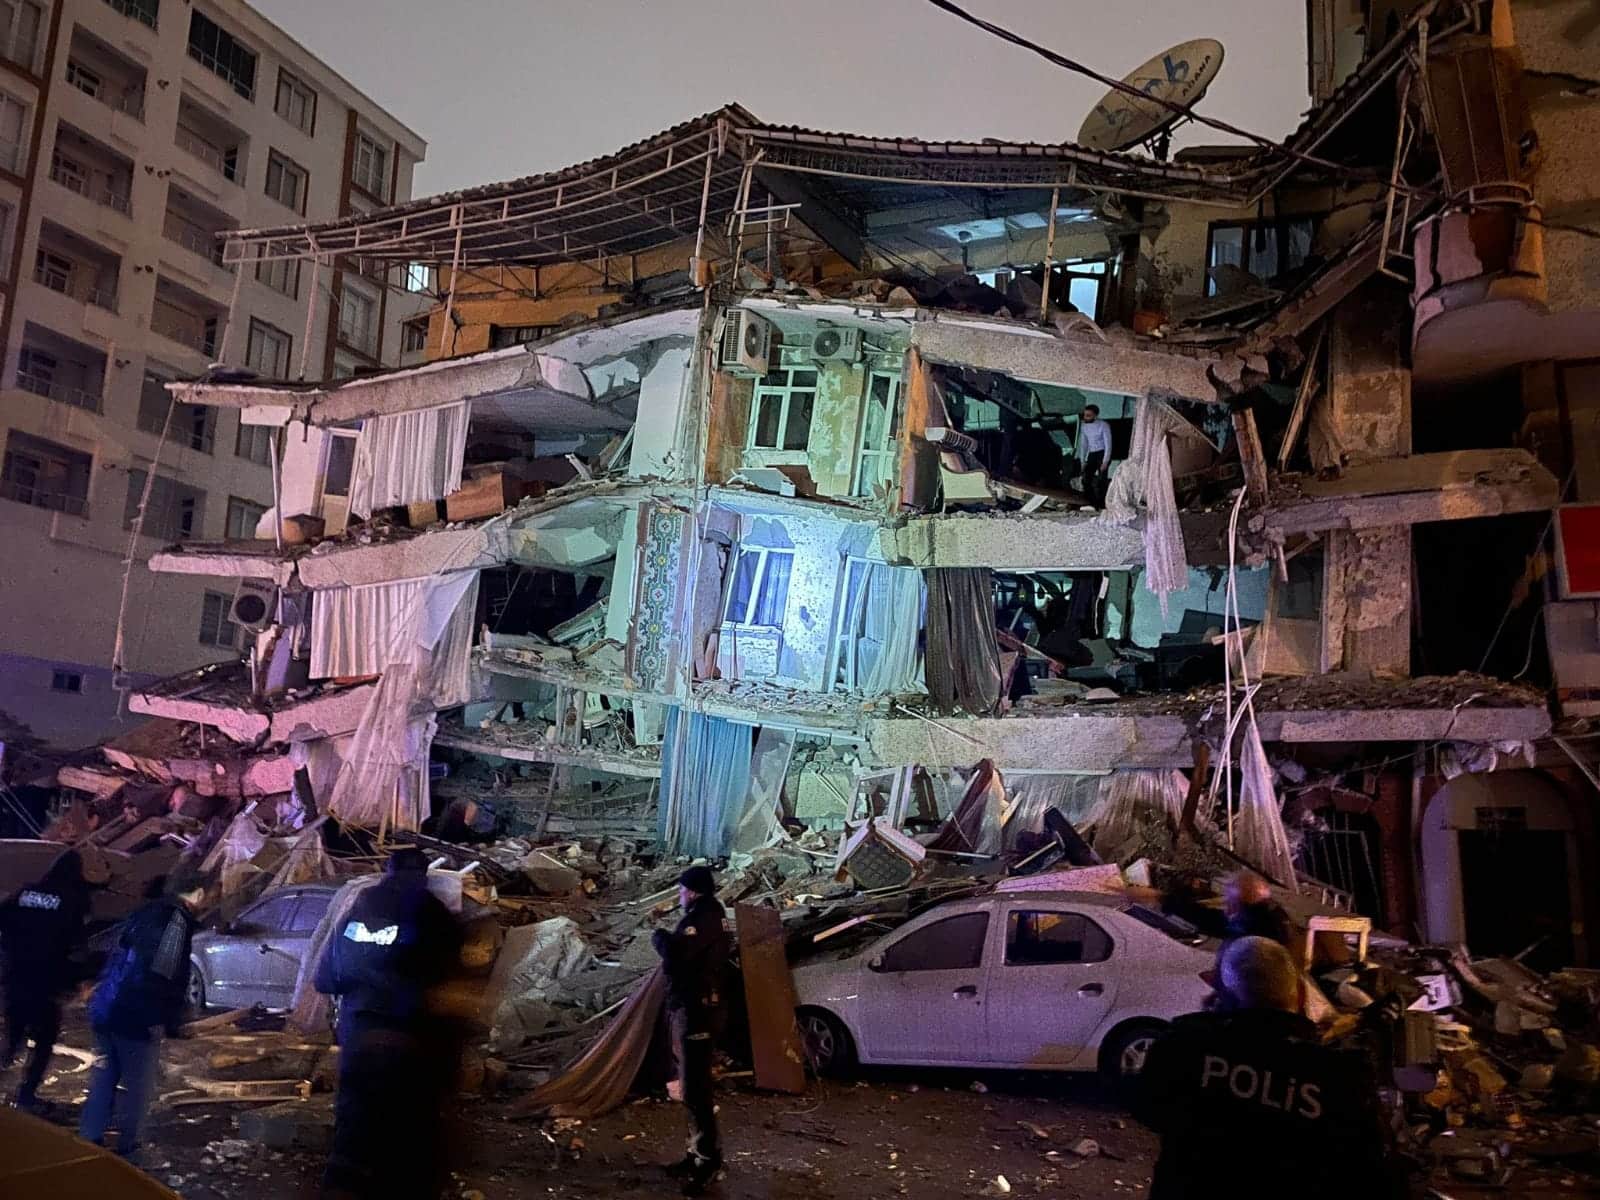 Sobrevivientes piden ayuda en redes sociales tras sismo en Turquía